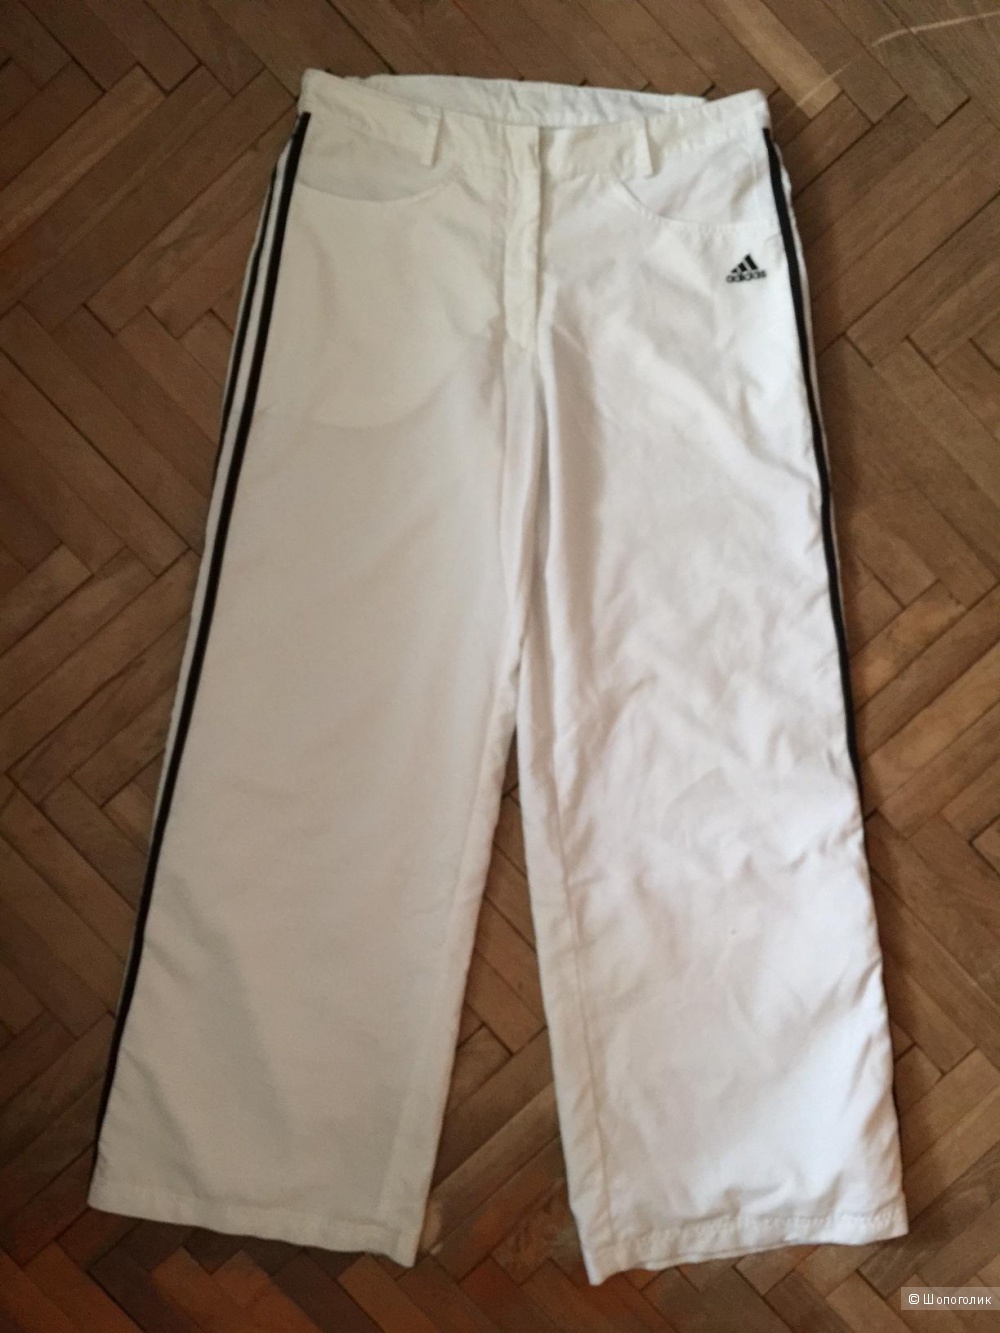 Шикарные белые брюки марки ADIDAS размер 46-48, в магазине Другой магазин — на Шопоголик